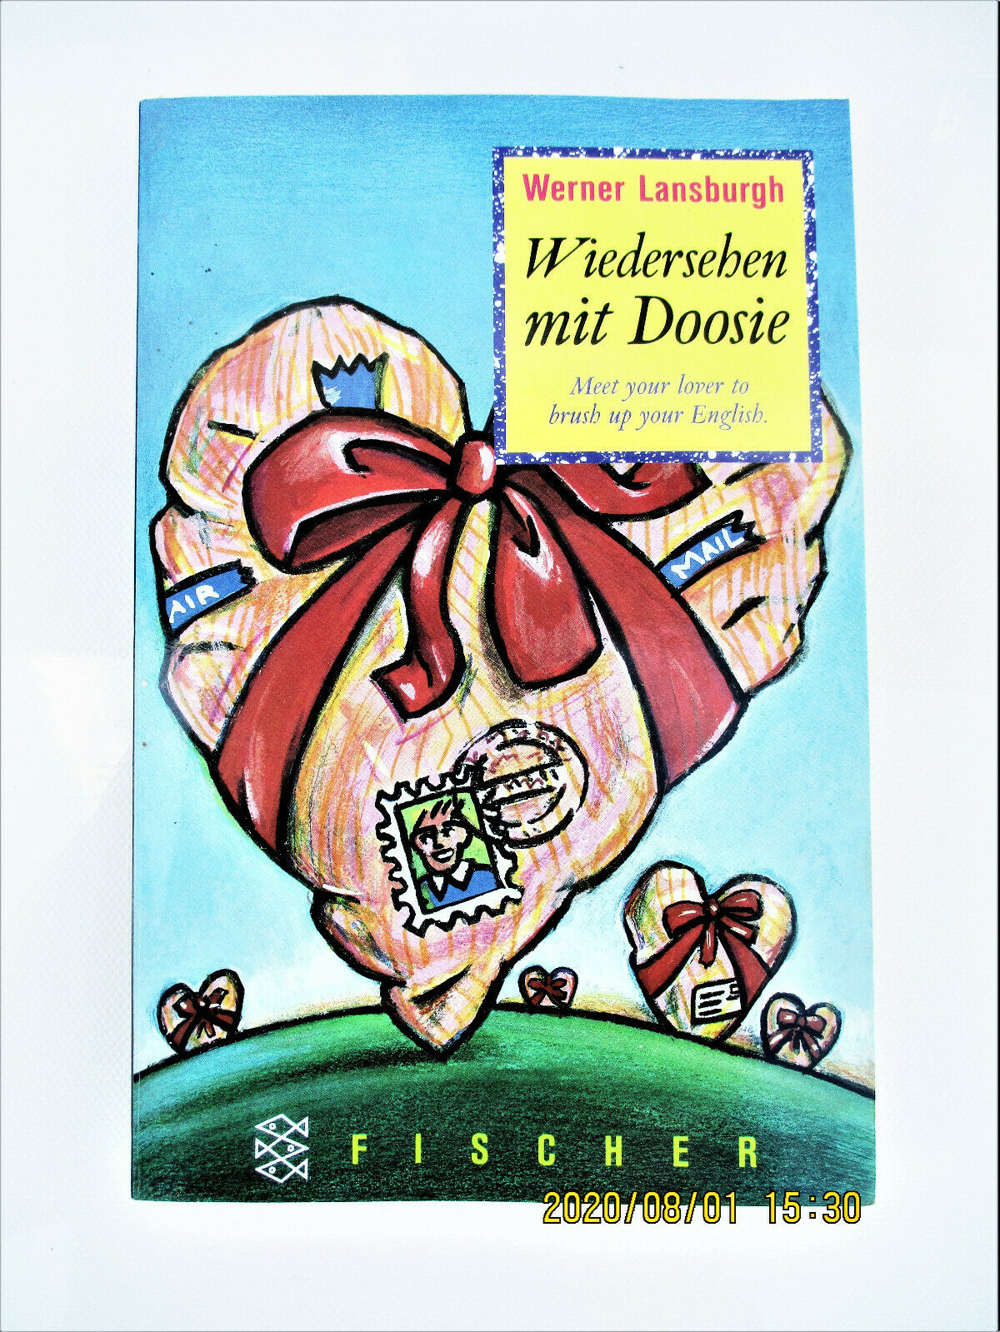 Wiedersehen mit Doosie. Werner Lansburgh. Meet your lover to brush up your english